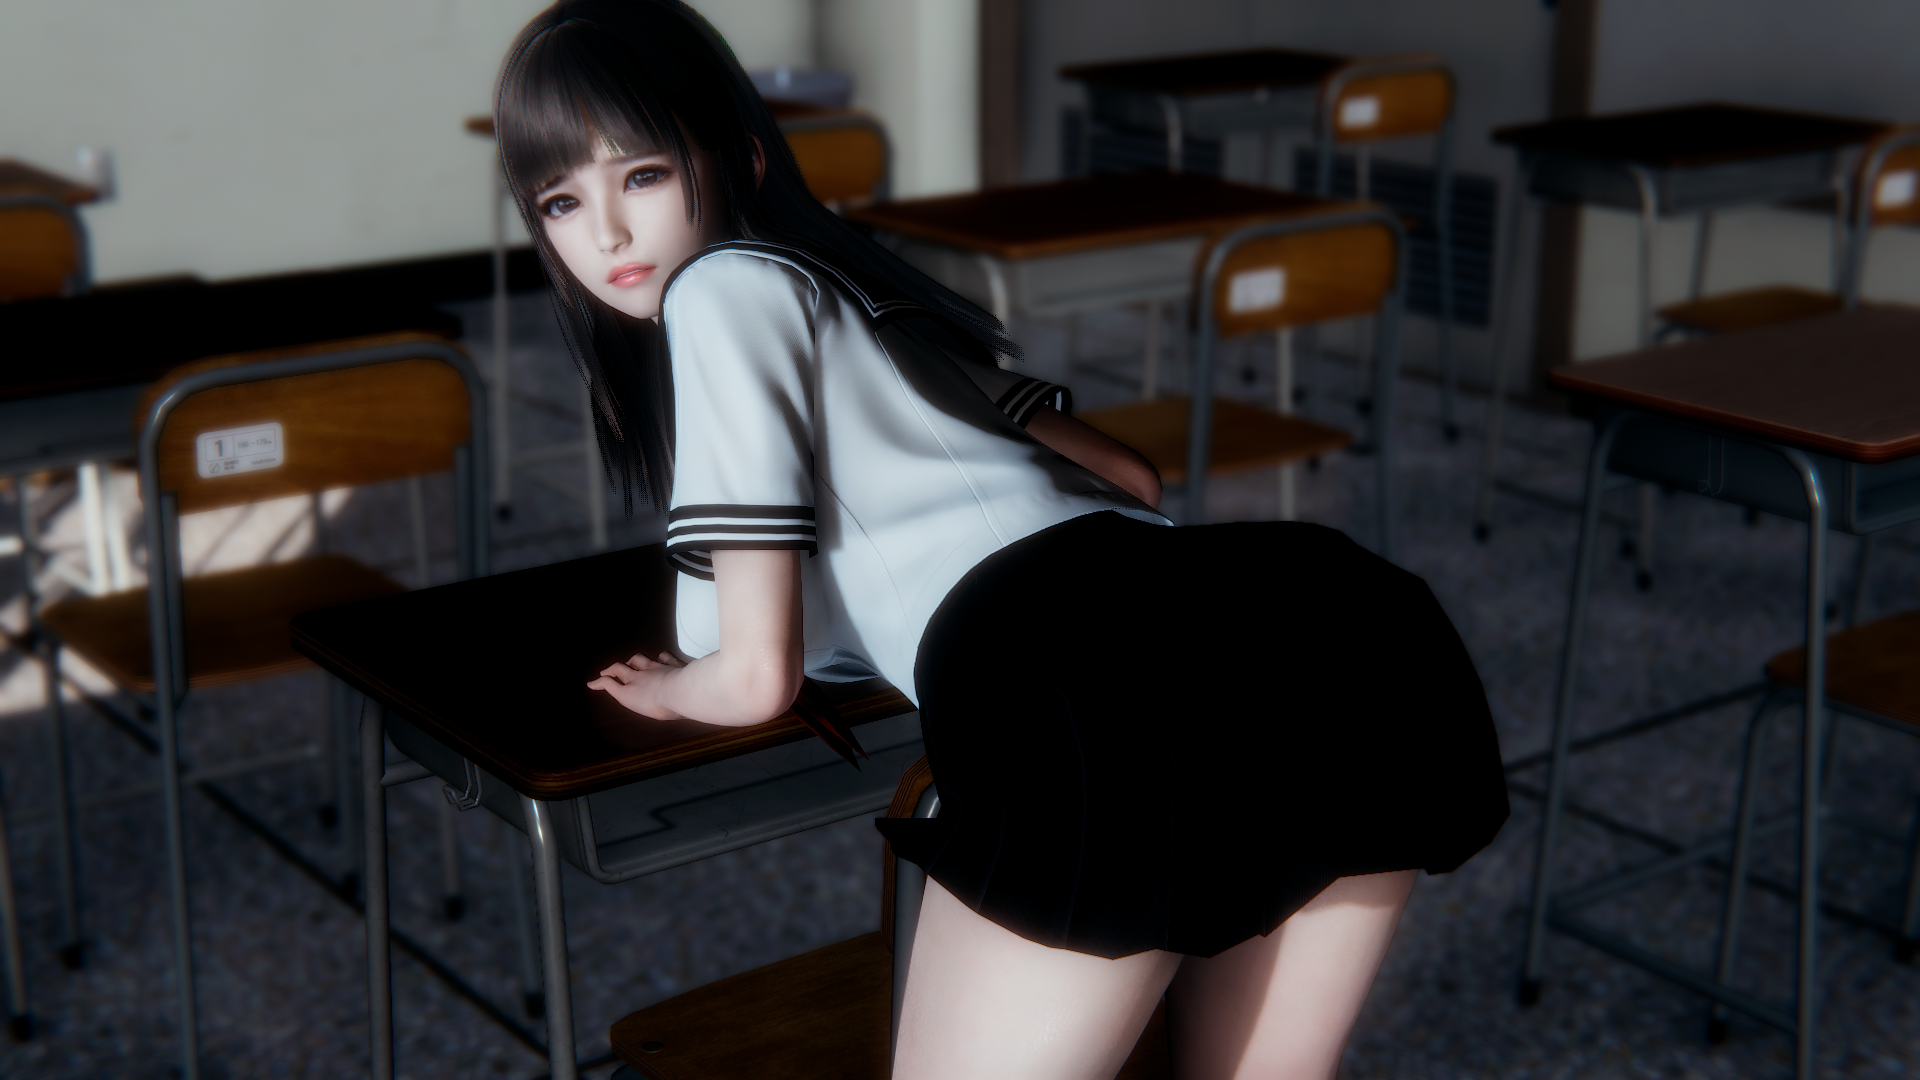 3D School Uniform Schoolgirl 1920x1080